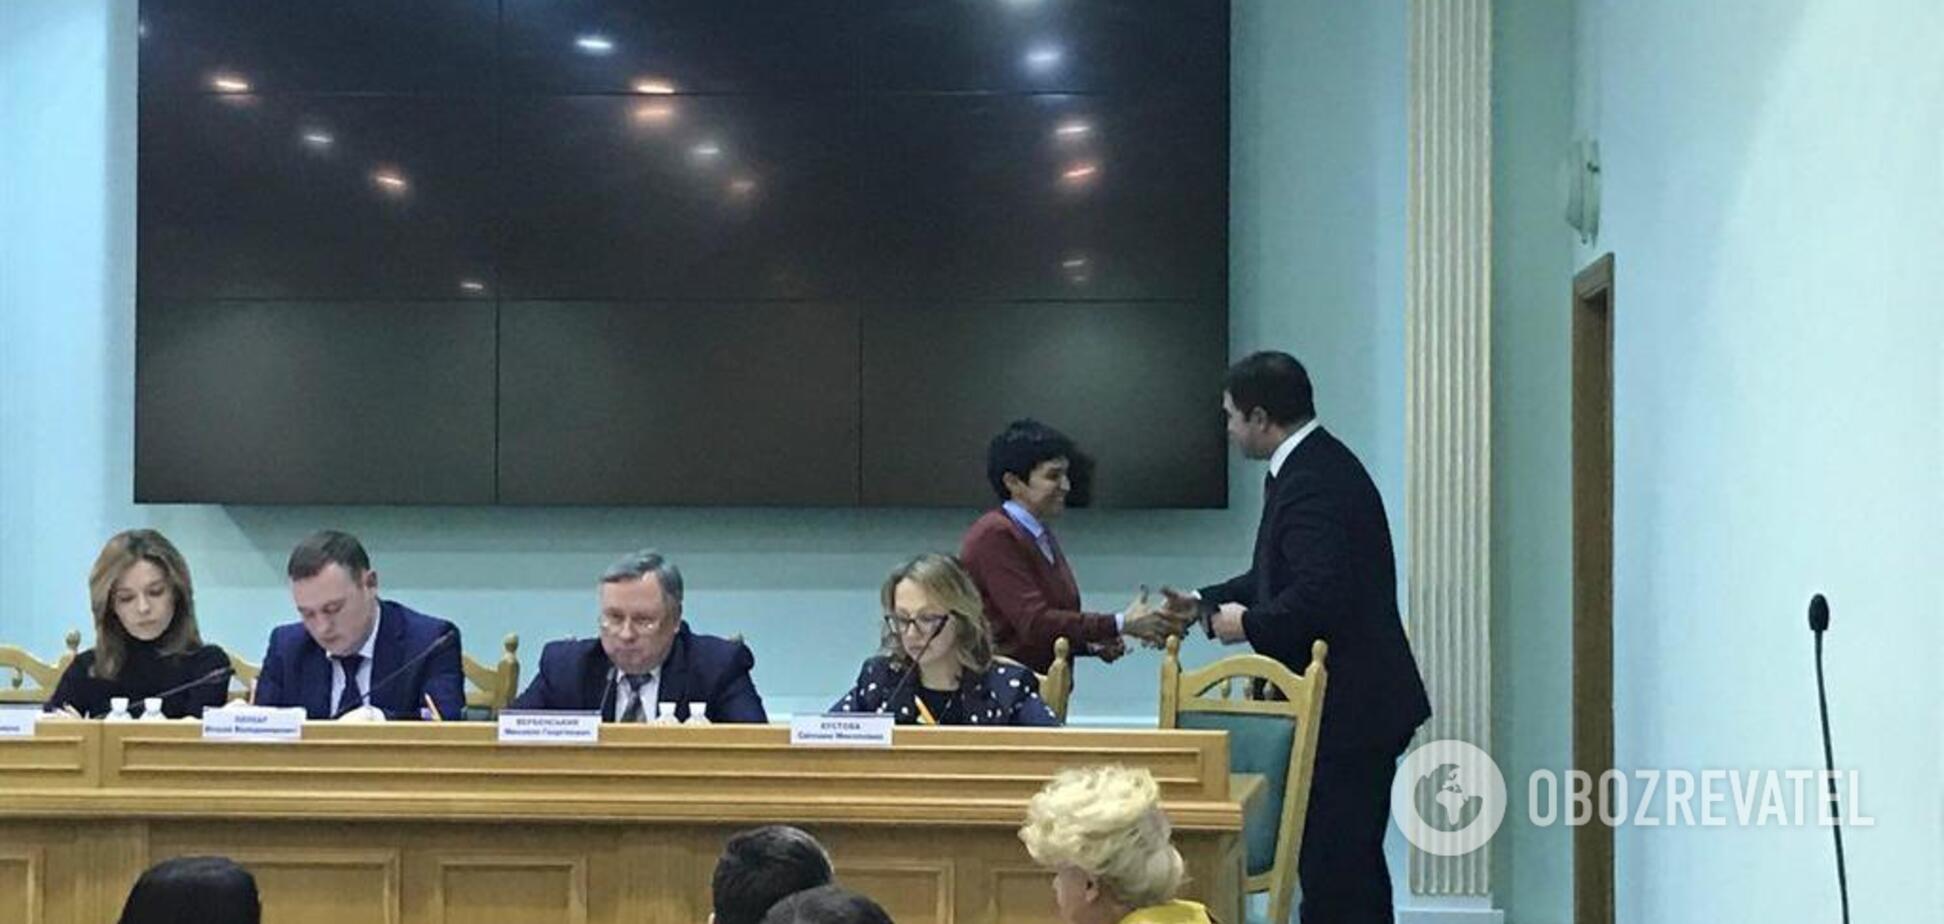 ЦИК зарегистрировала Насирова кандидатом в президенты Украины